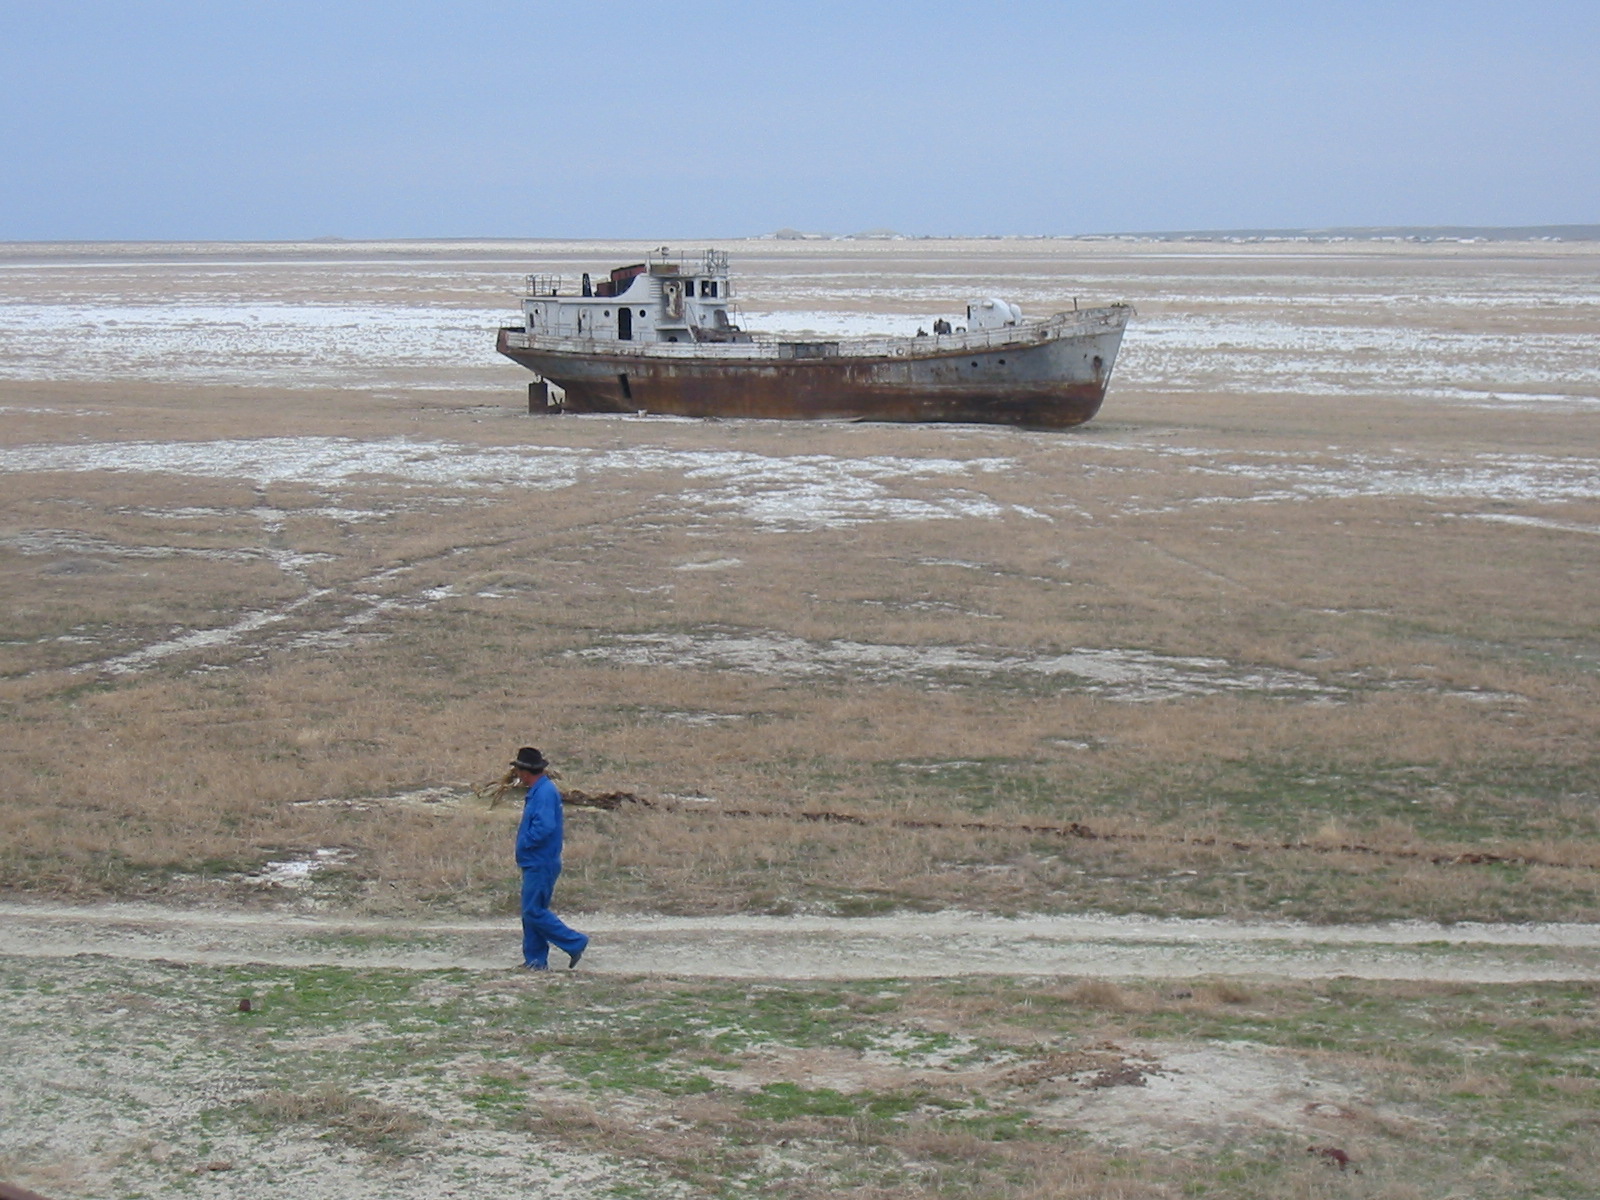 Abandoned ship near Aral, Kazakhstan